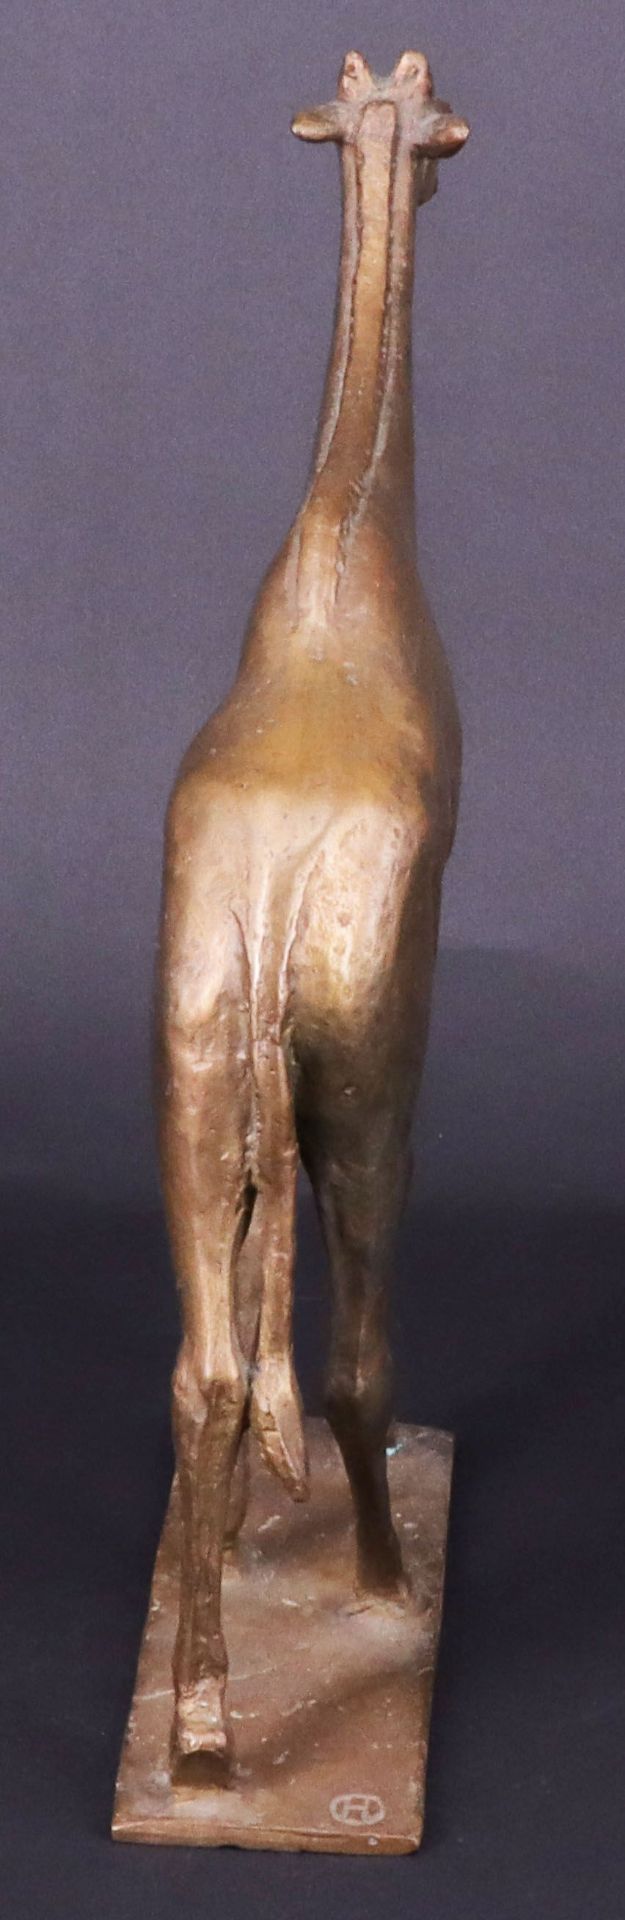 Giraffe auf flacher Plinthe, Bronze, gemarkt "H", H. 24 cm - Image 2 of 3